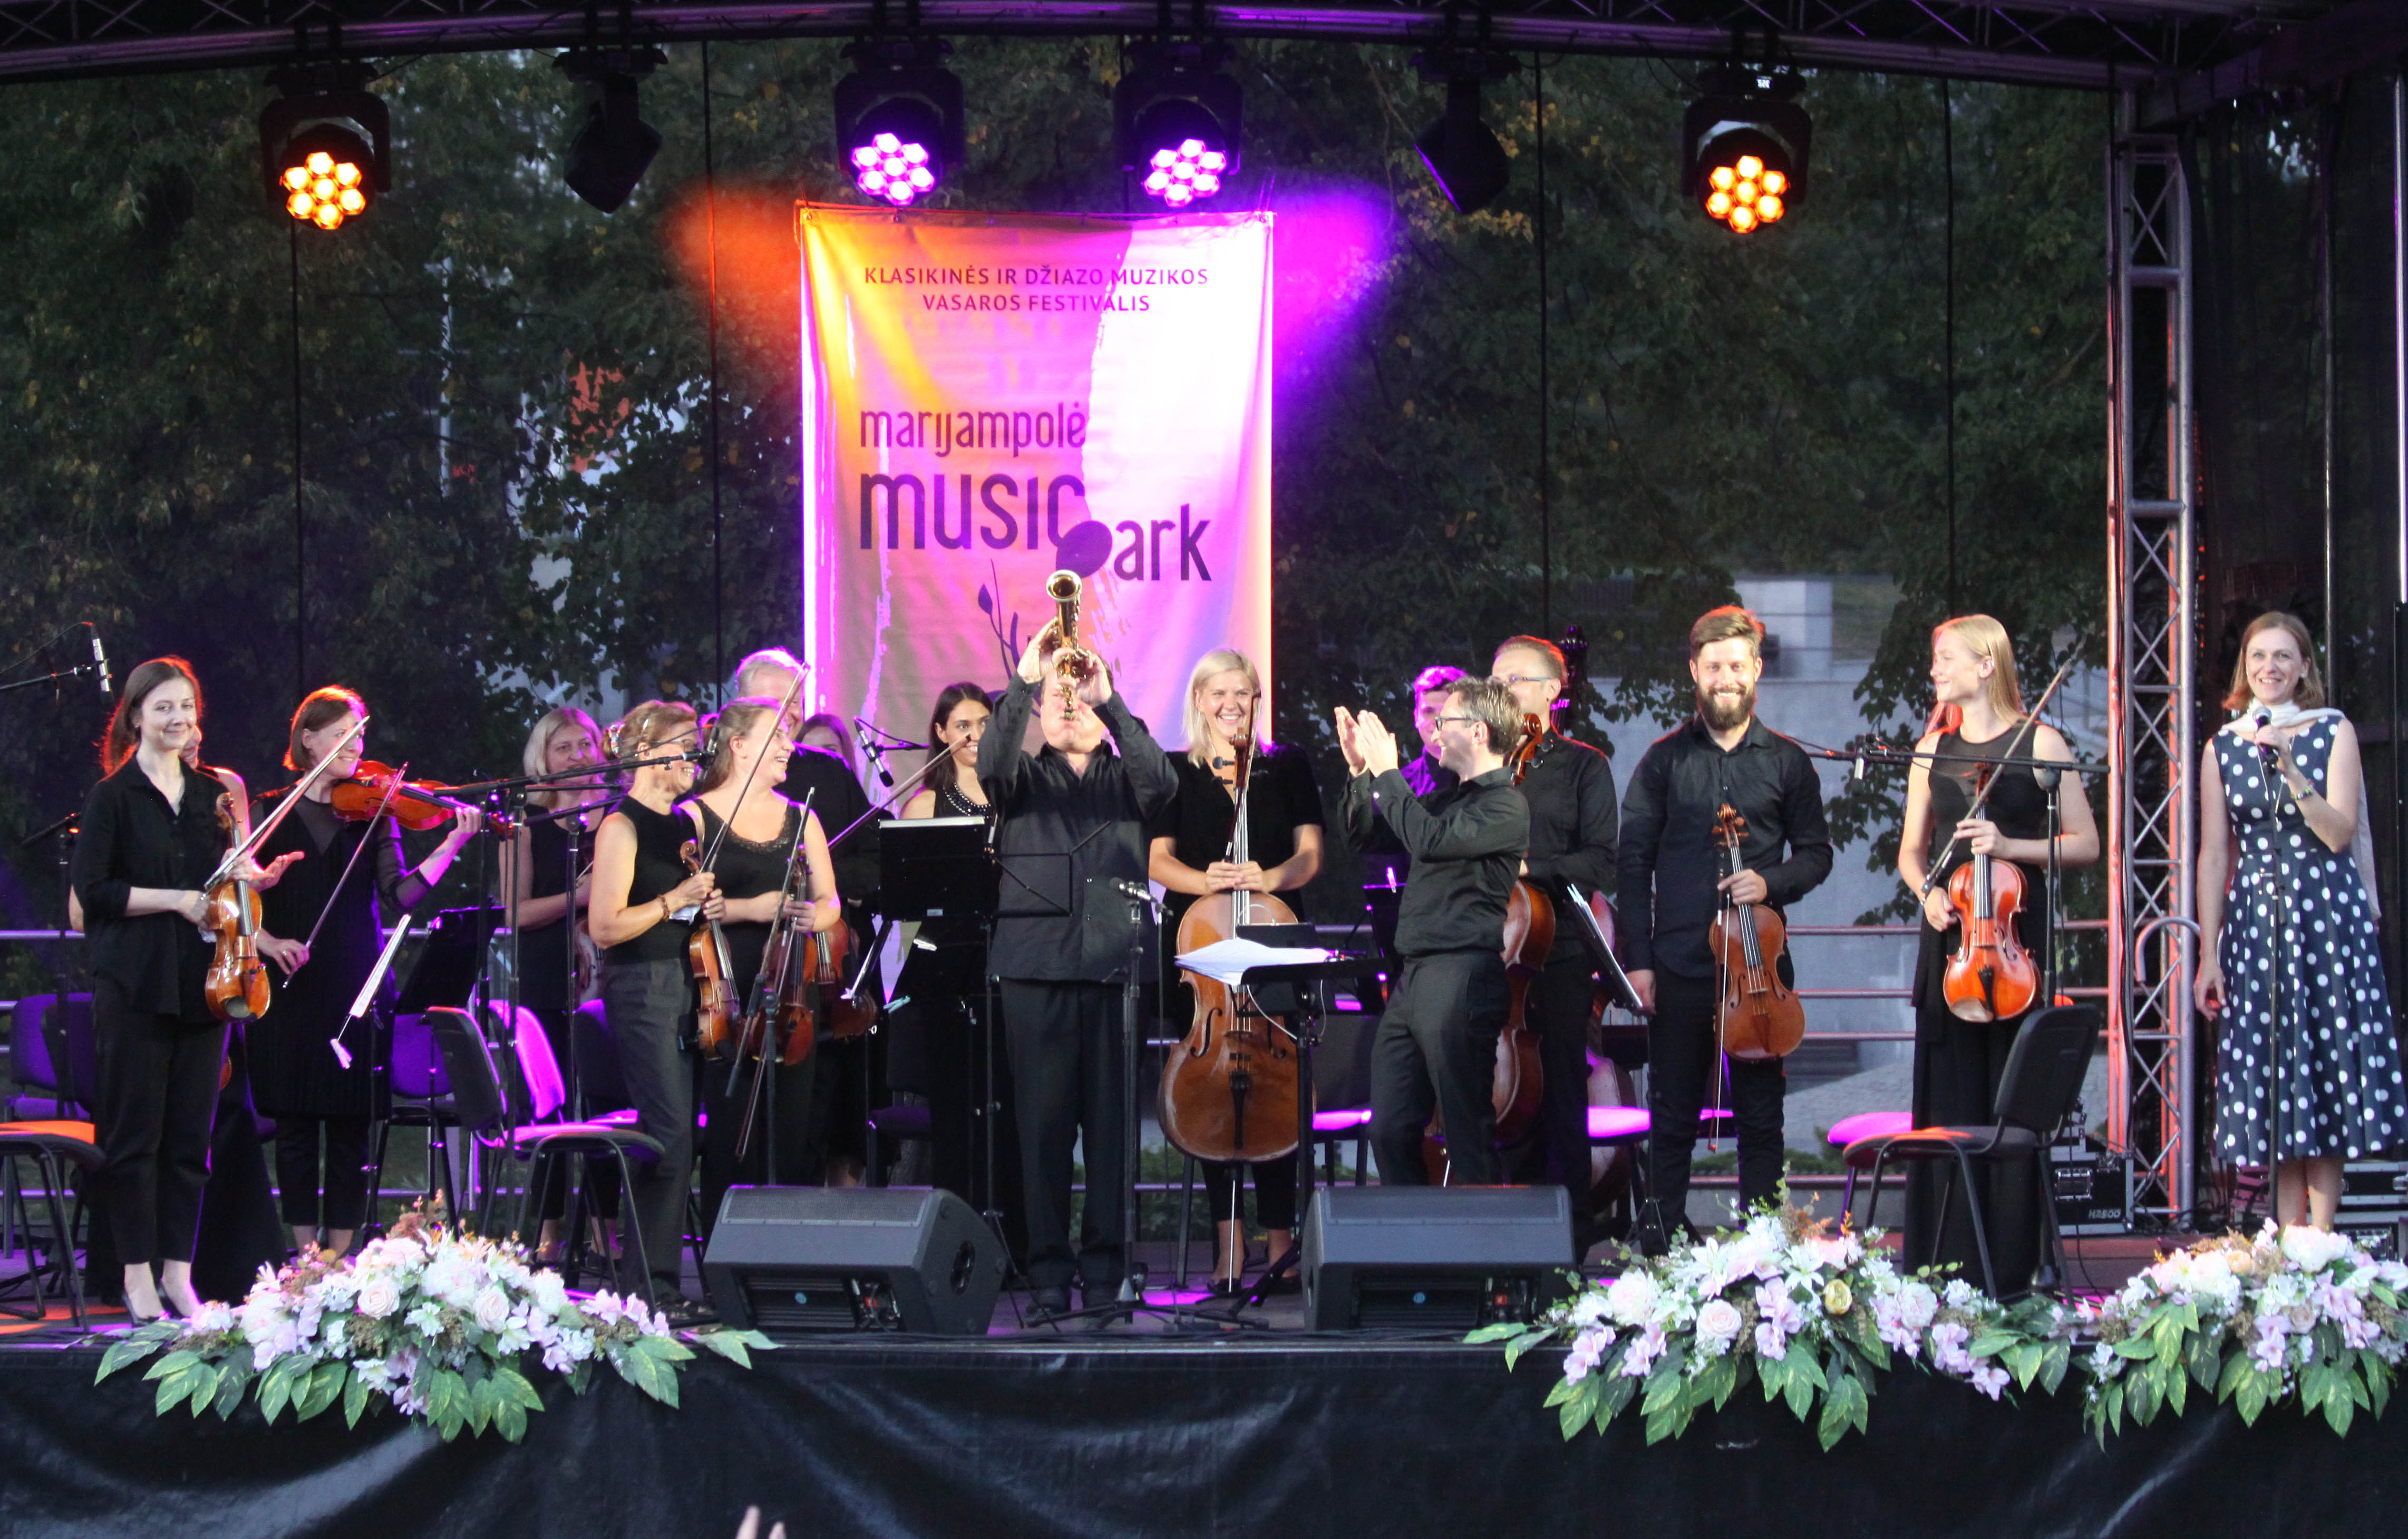 ,,Marijampolė Music Park